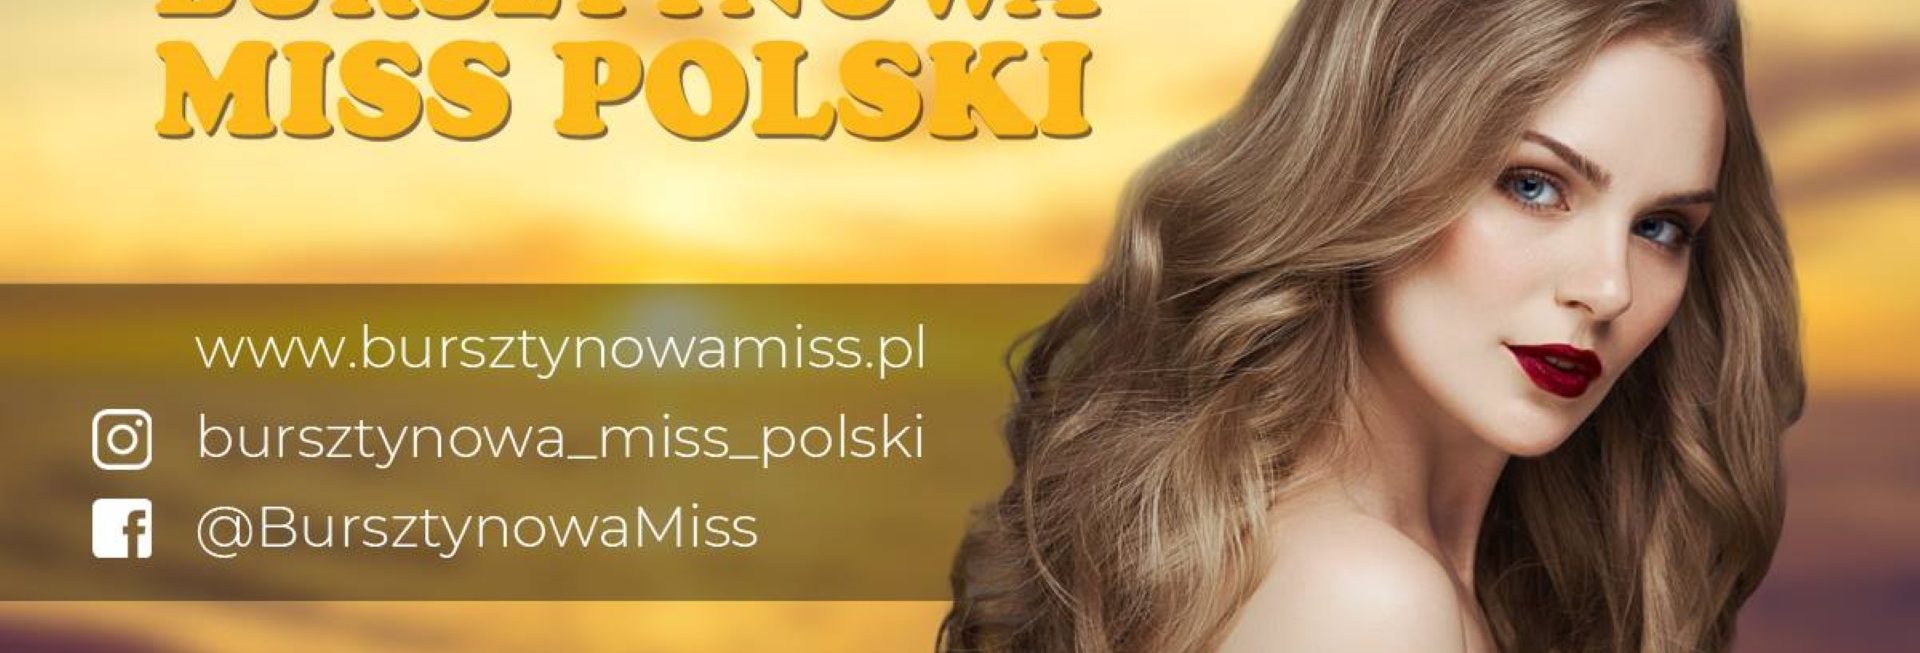 Plakat zapraszający do Węgorzewa na Wielki Finał Wyborów Bursztynowej Miss Polski - Węgorzewo 2021. Na plakacie zdjęcie jednej z uczestniczek imprezy oraz napisy.